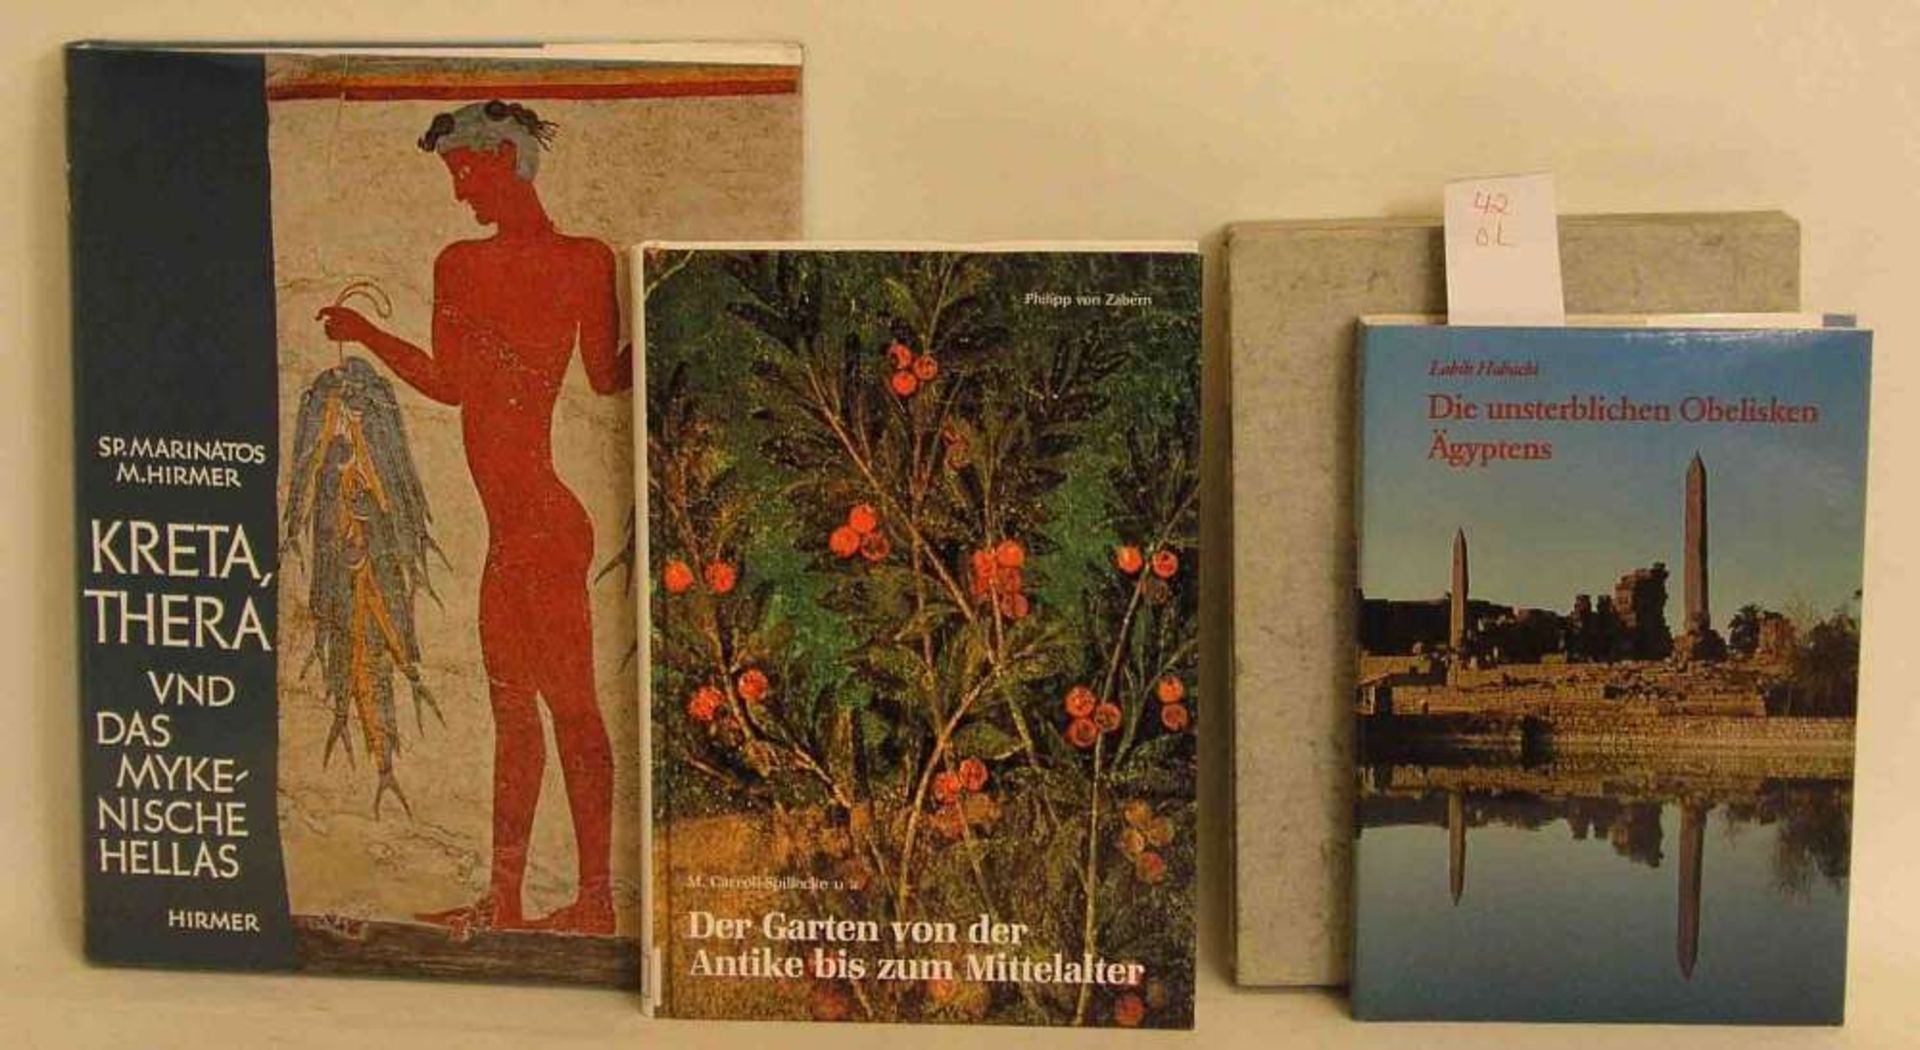 Kunst und Geschichte, vier Bücher. Dabei Habachi, Labib: "Die unsterblichen Obelisken Ägyptens".